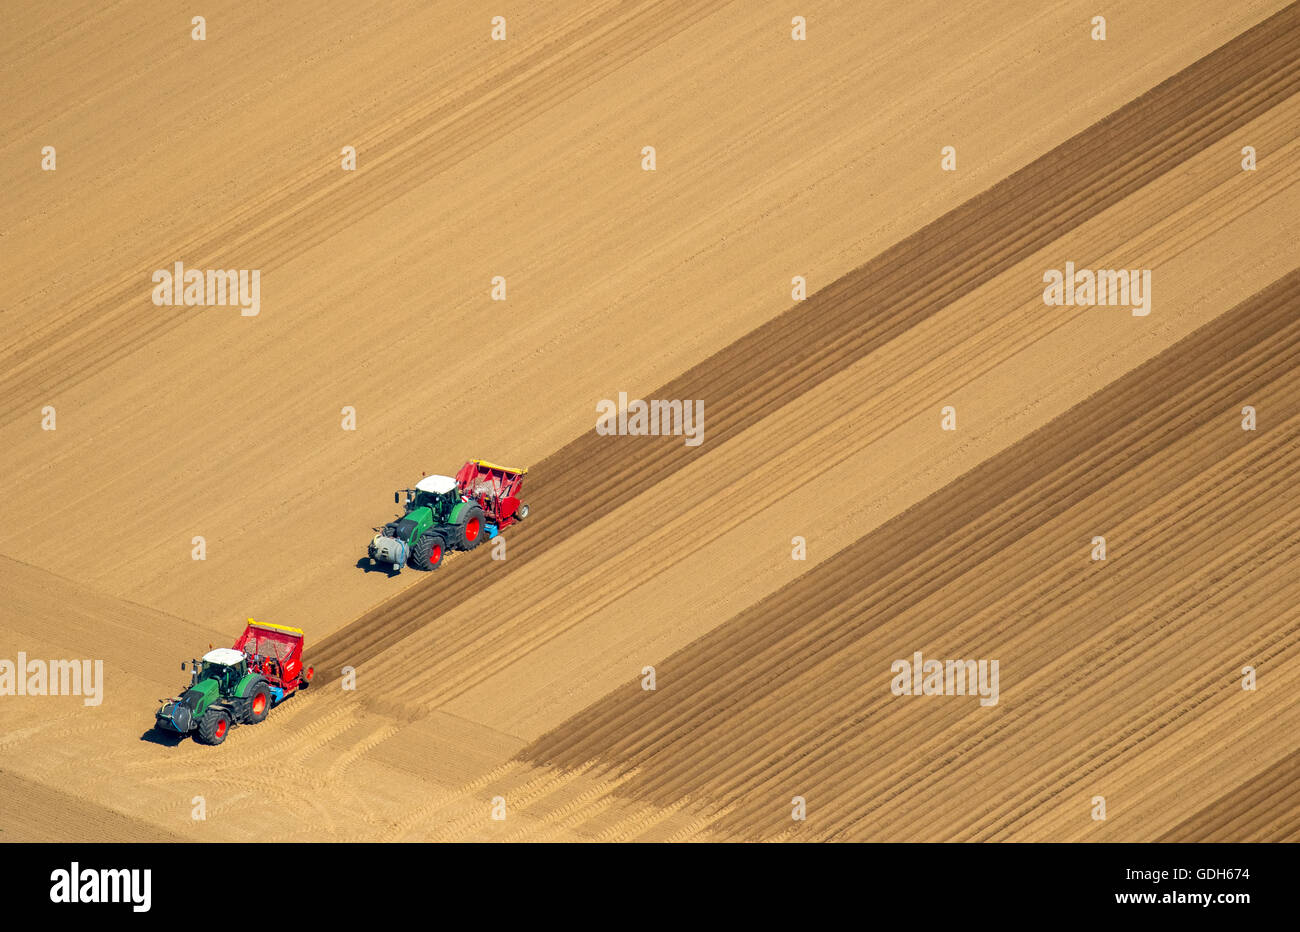 Vue aérienne, tracteurs dans un champ, de terres arables, le hersage, l'ensemencement et Linnich, Bas-rhin, Rhénanie du Nord-Westphalie, Allemagne Banque D'Images